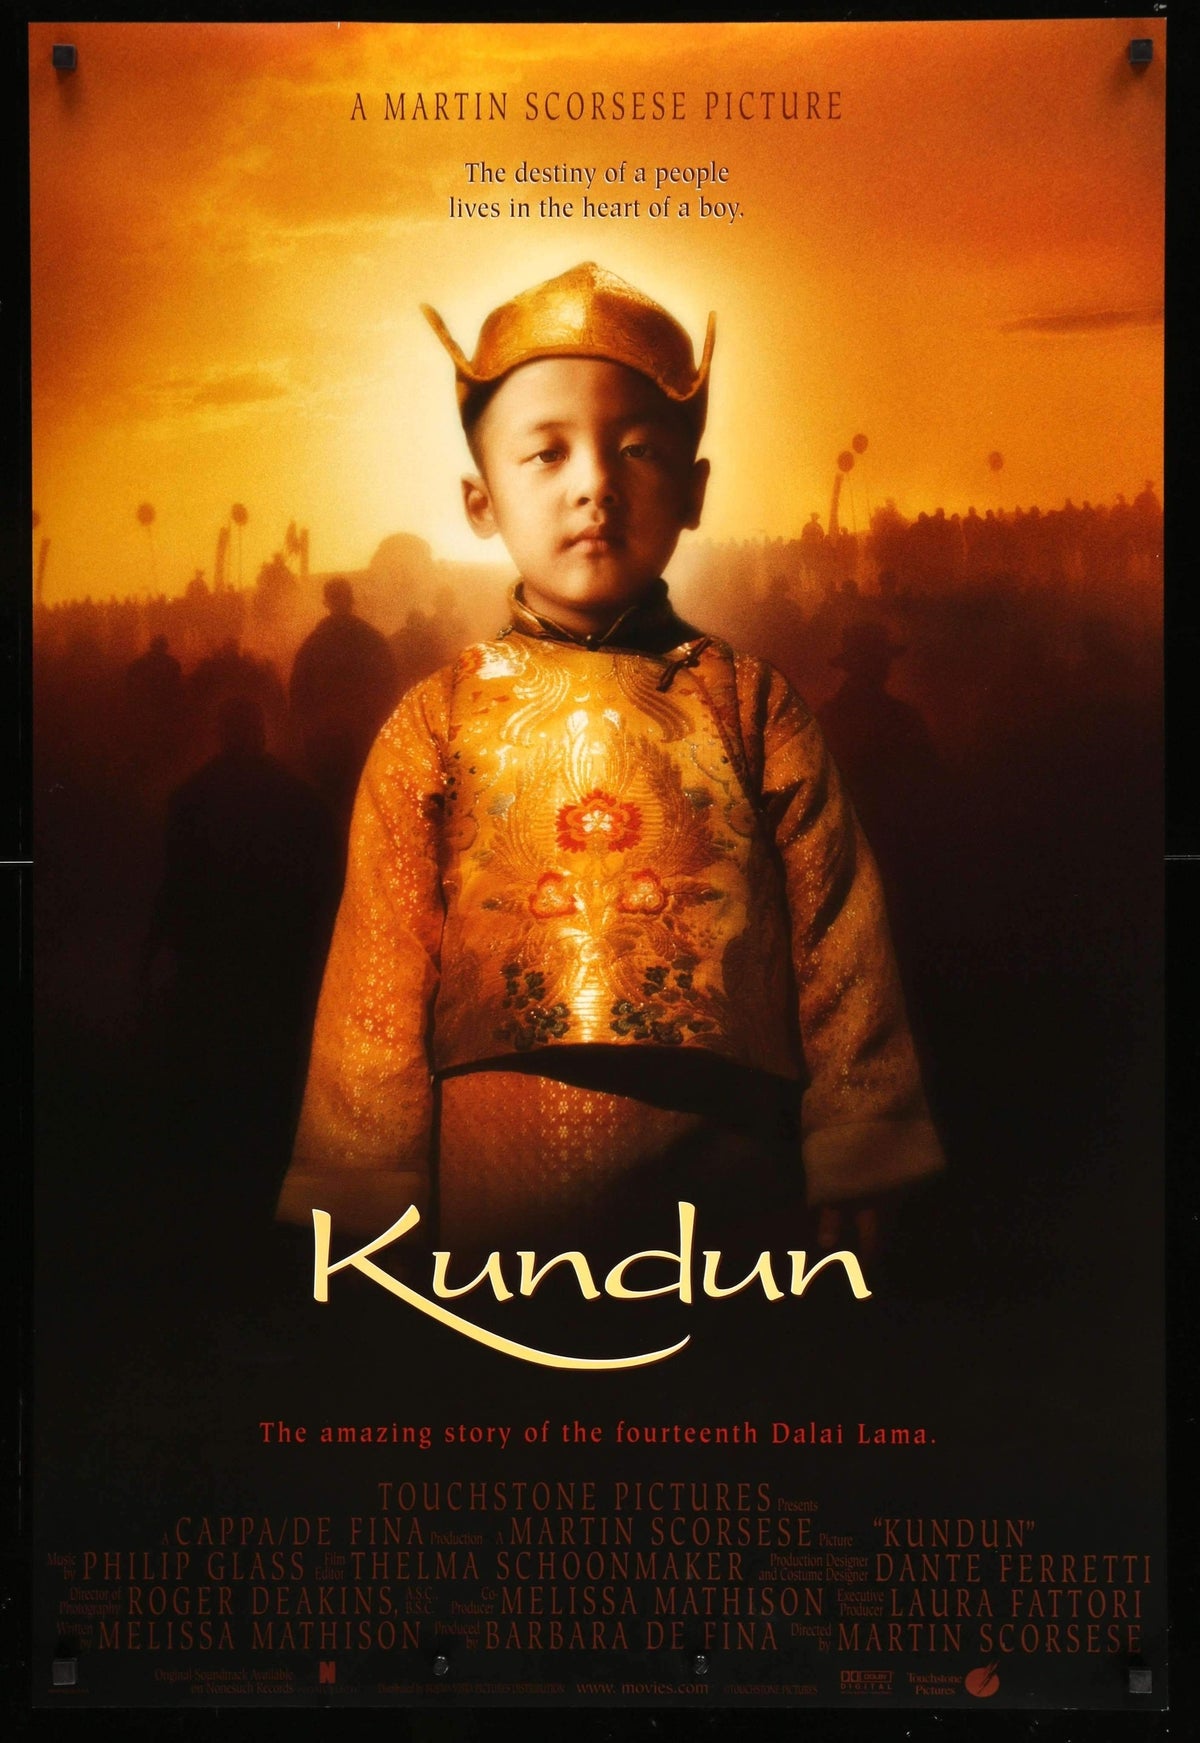 Kundun (1997) original movie poster for sale at Original Film Art